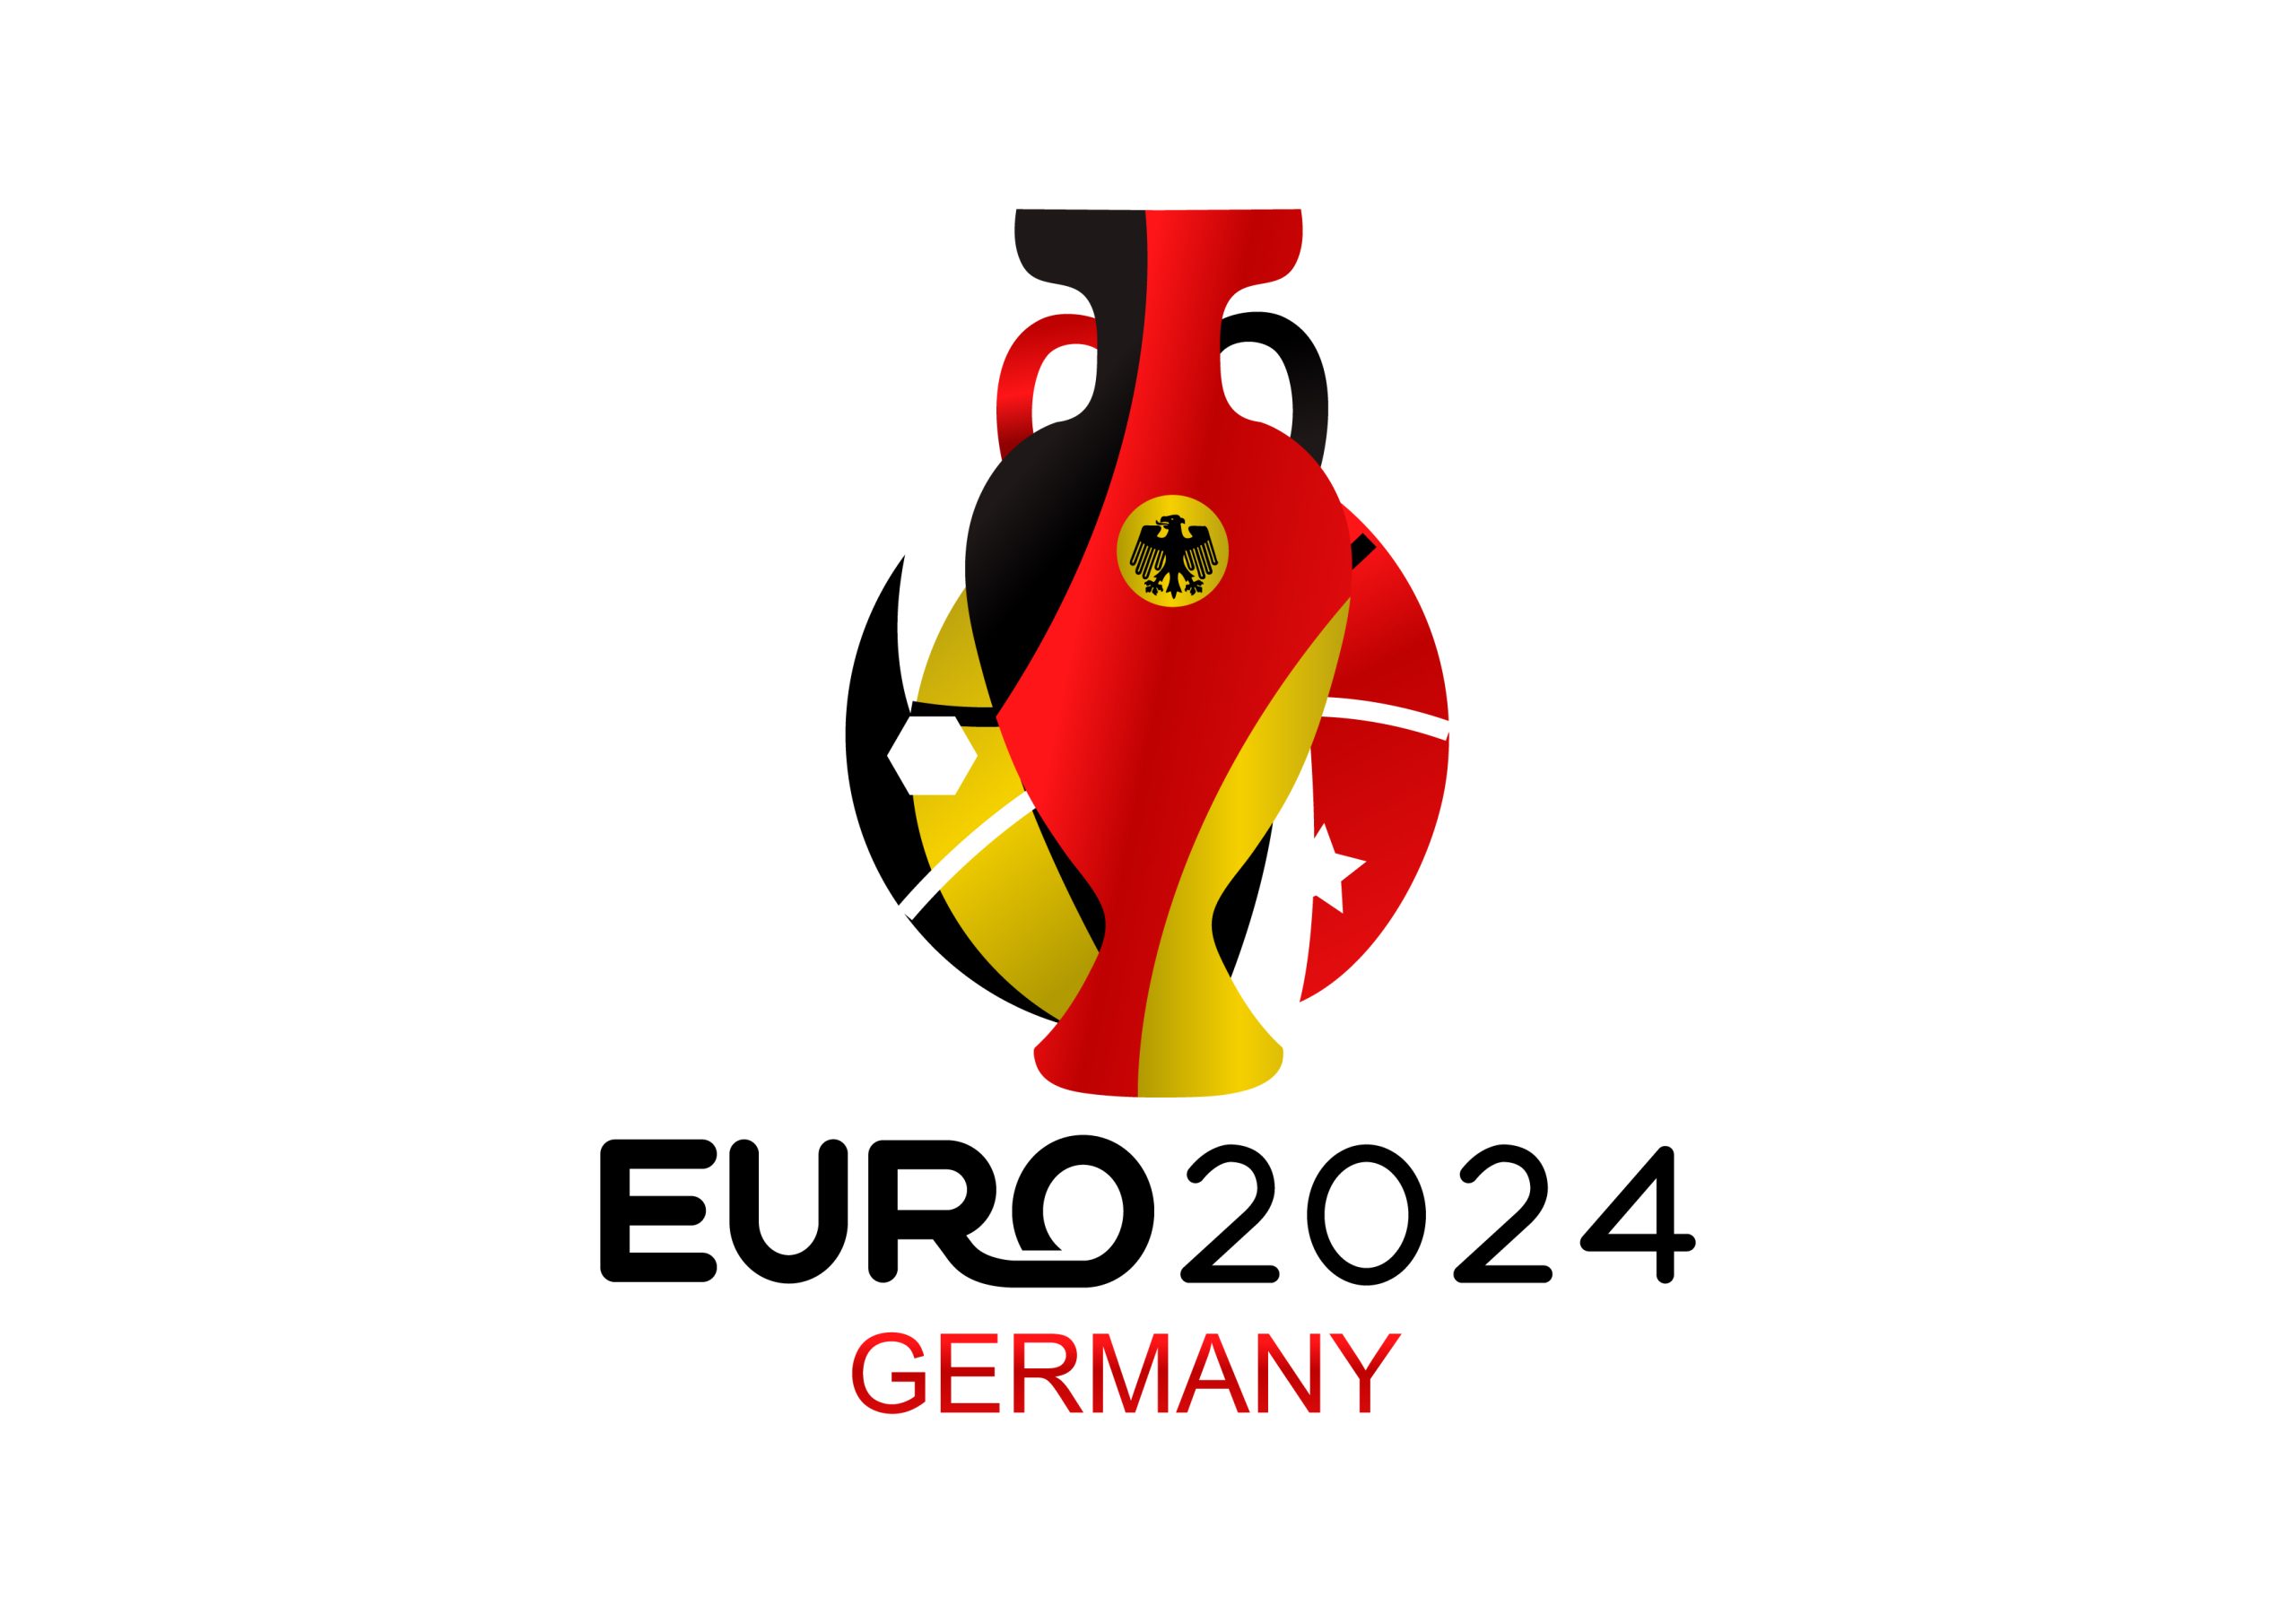 Отборочные евро 24. УЕФА евро 2024. Чемпионат Европы по футболу 2024 Германия. Эмблема евро 2024 по футболу. Логотип чемпионата Европы 2024.